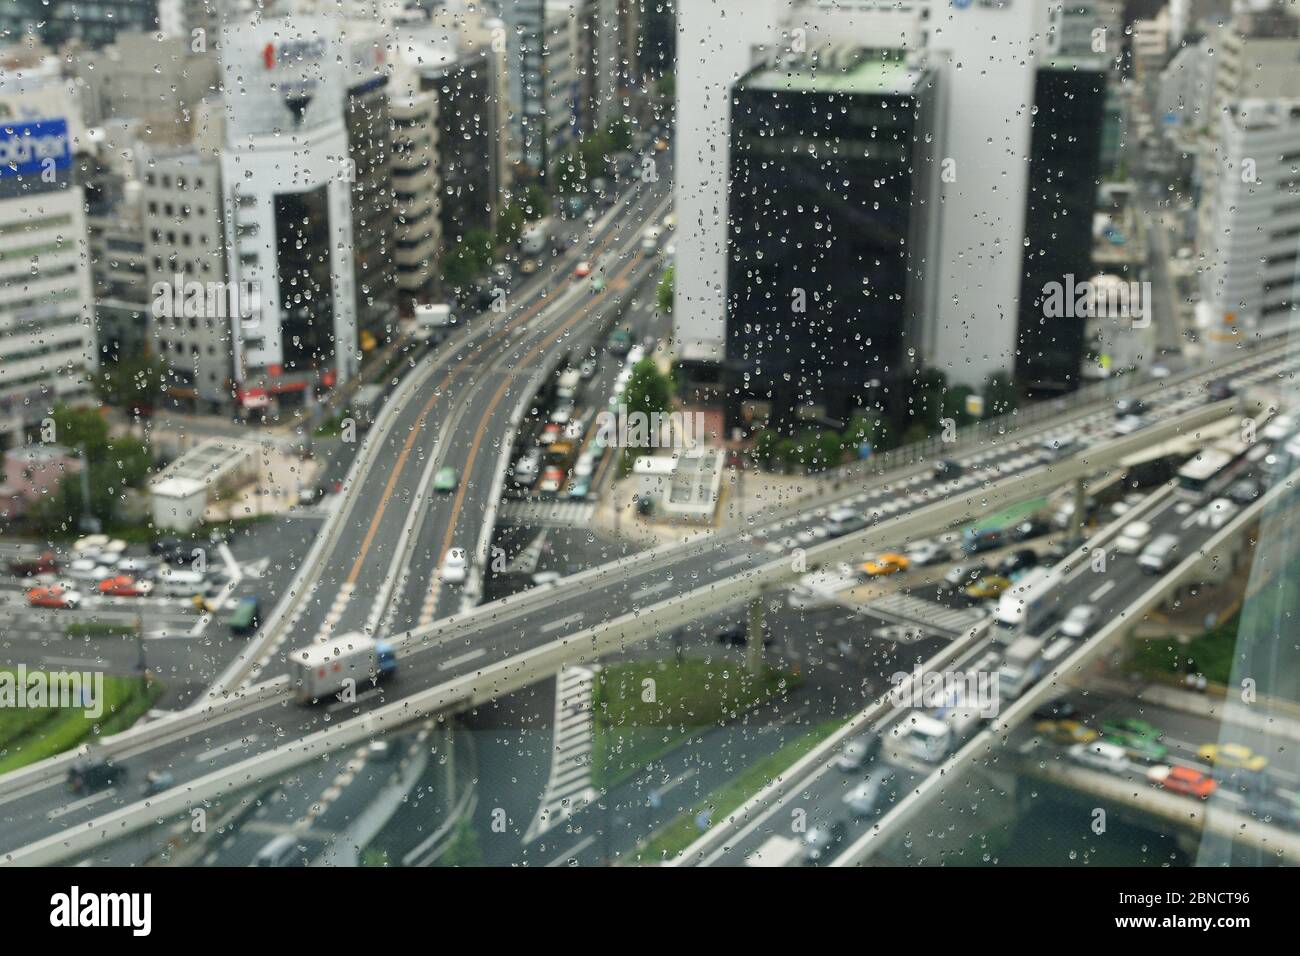 Brücken kreuz und quer / Säßenszene durch verregnee Fosterscheibe von oben in Tokio Japan Banque D'Images